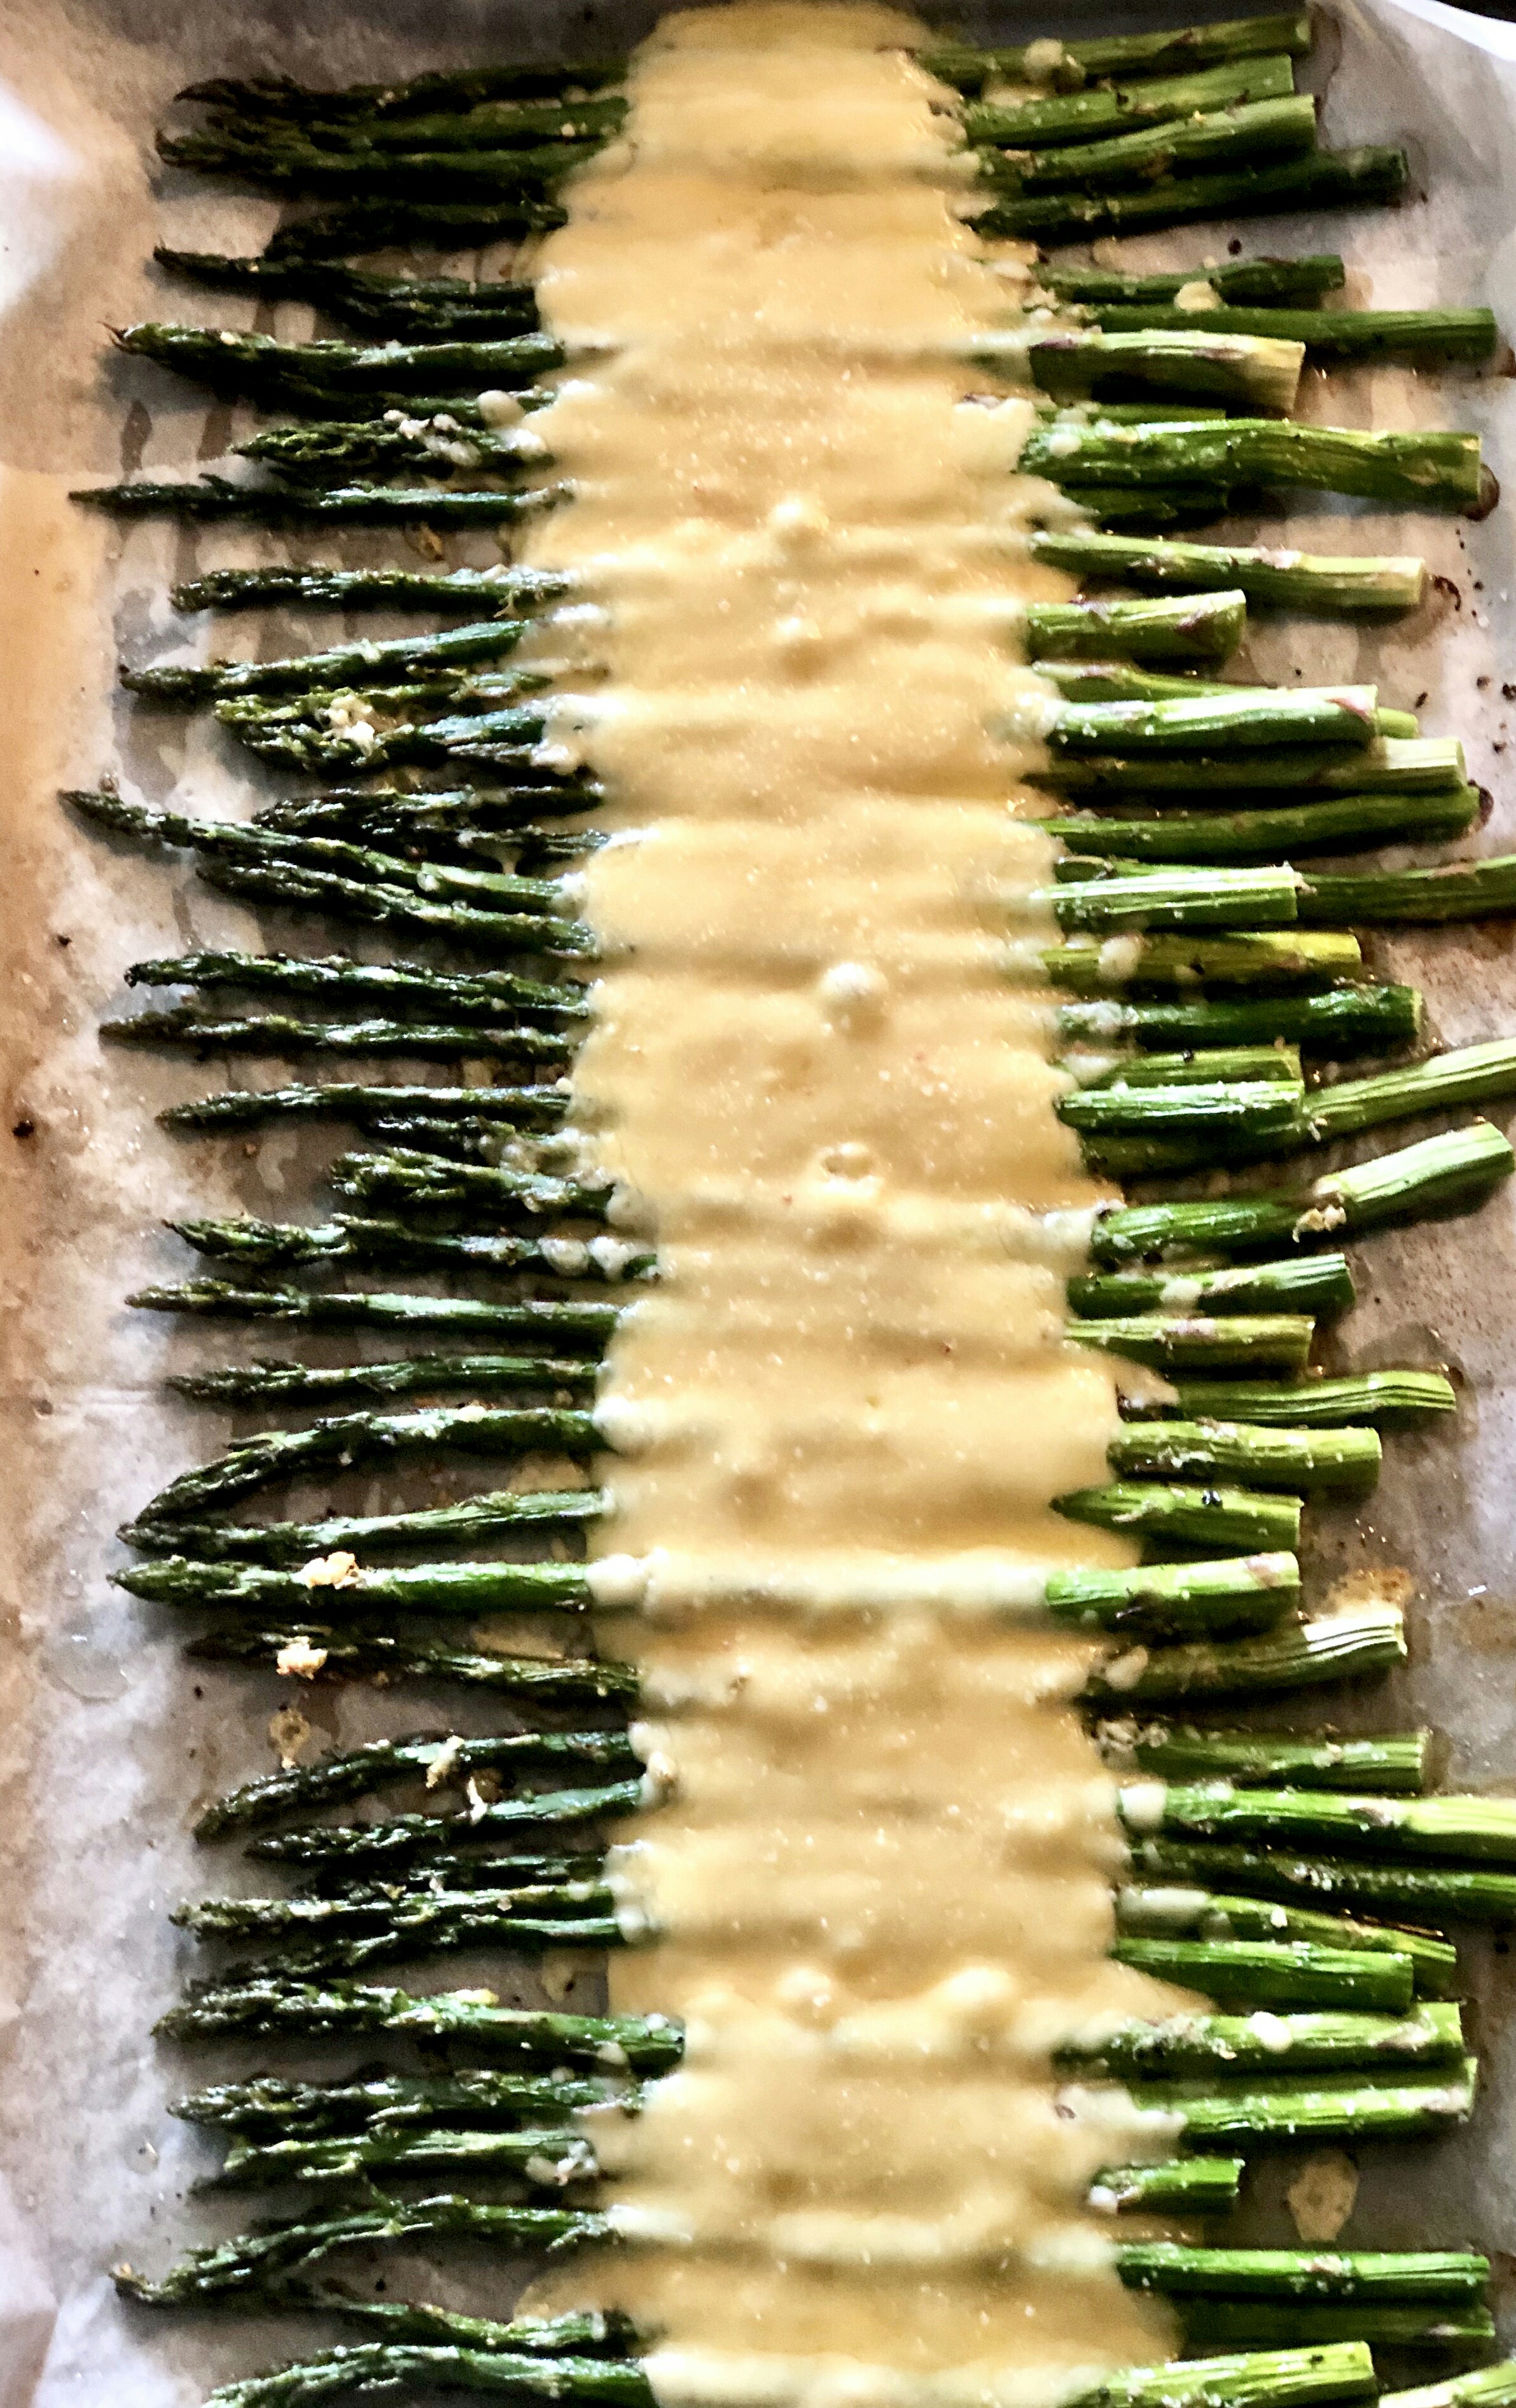 Cheesy Baked Asparagus